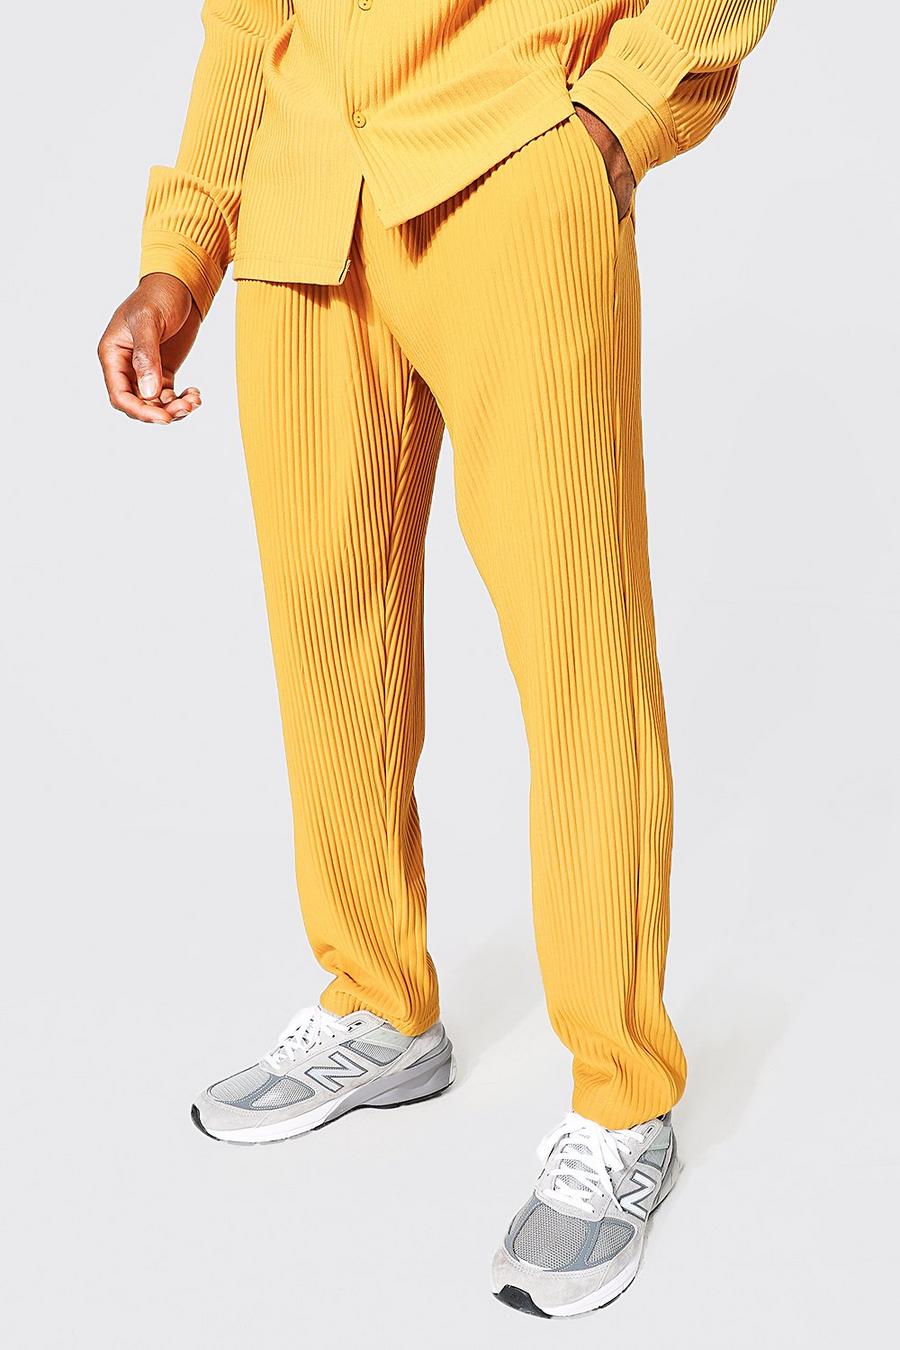 Pantalón deportivo estrecho plisado tobillero, Mustard amarillo image number 1